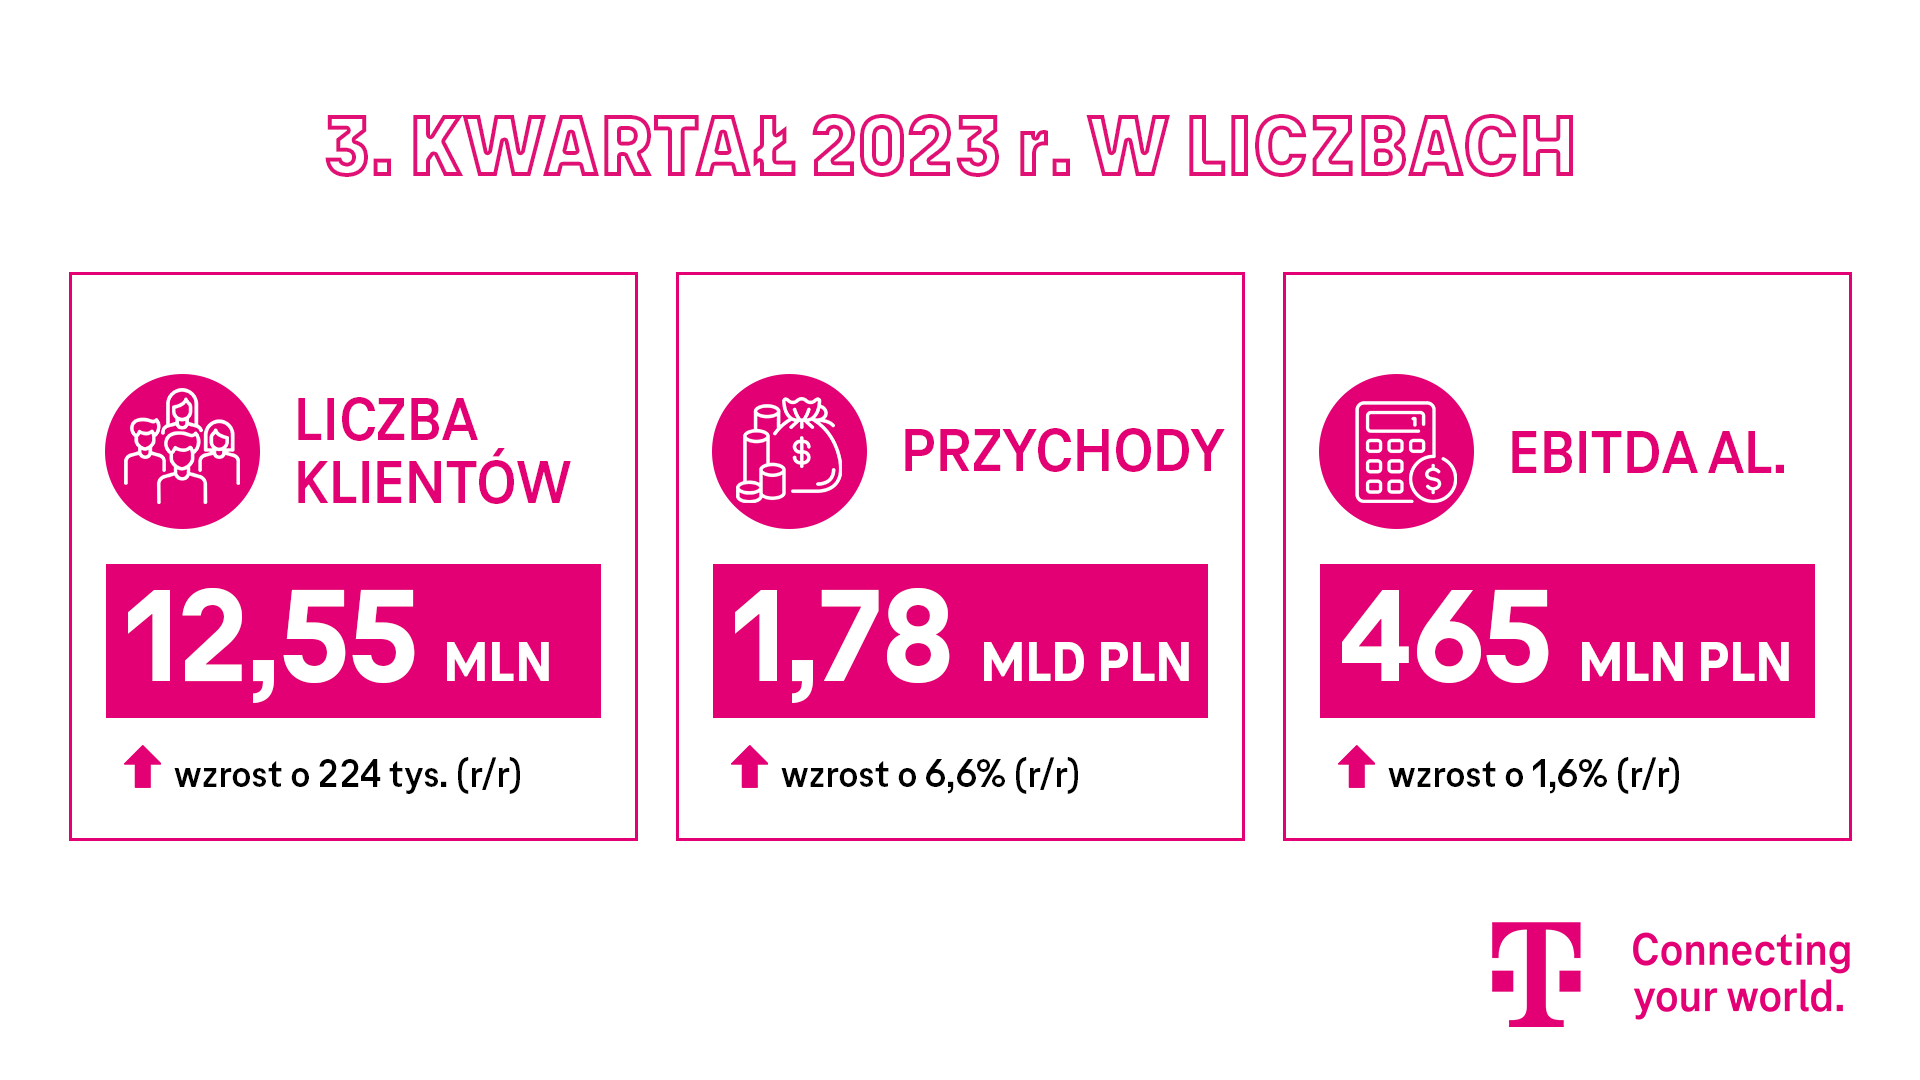 Stabilny rozwój wszystkich wskaźników operacyjnych przekłada się na zwiększenie dynamiki wzrostu T-Mobile Polska